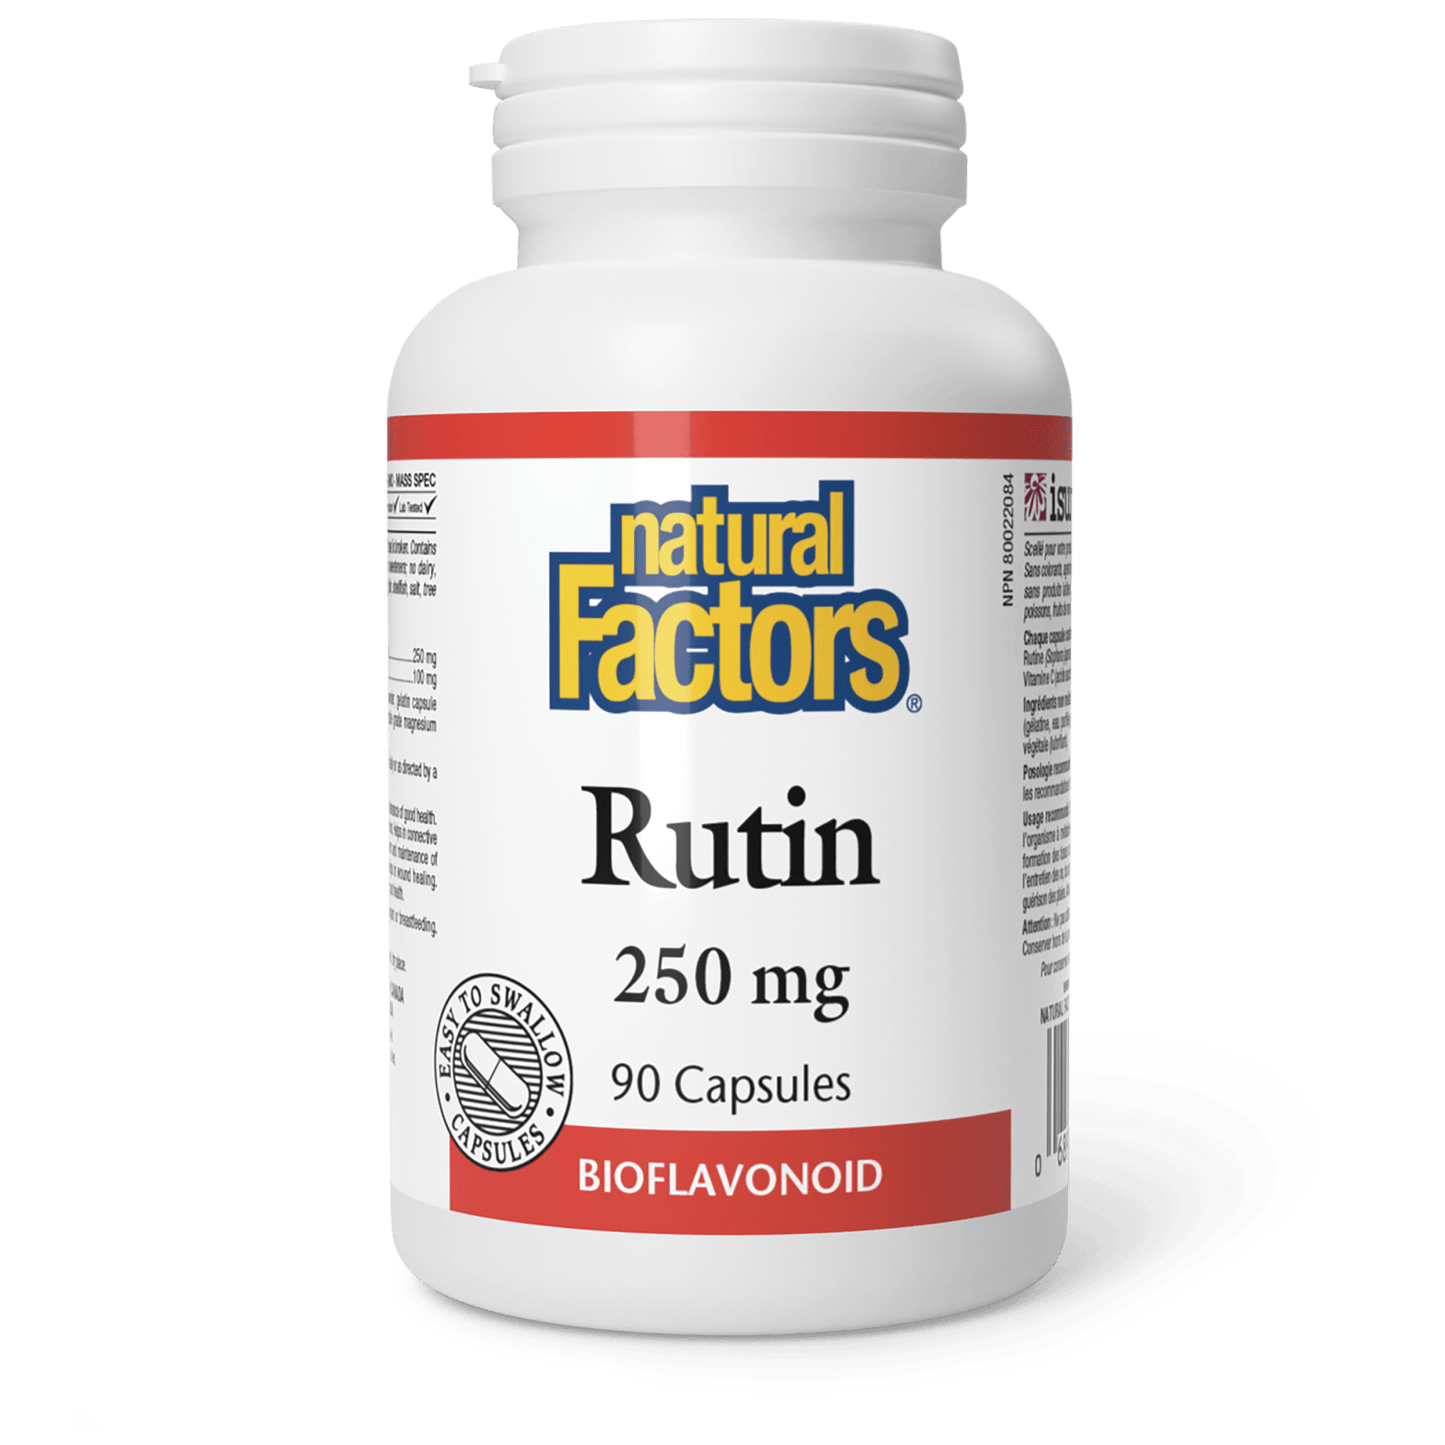 Rutin 250 mg, Natural Factors|v|image|1391